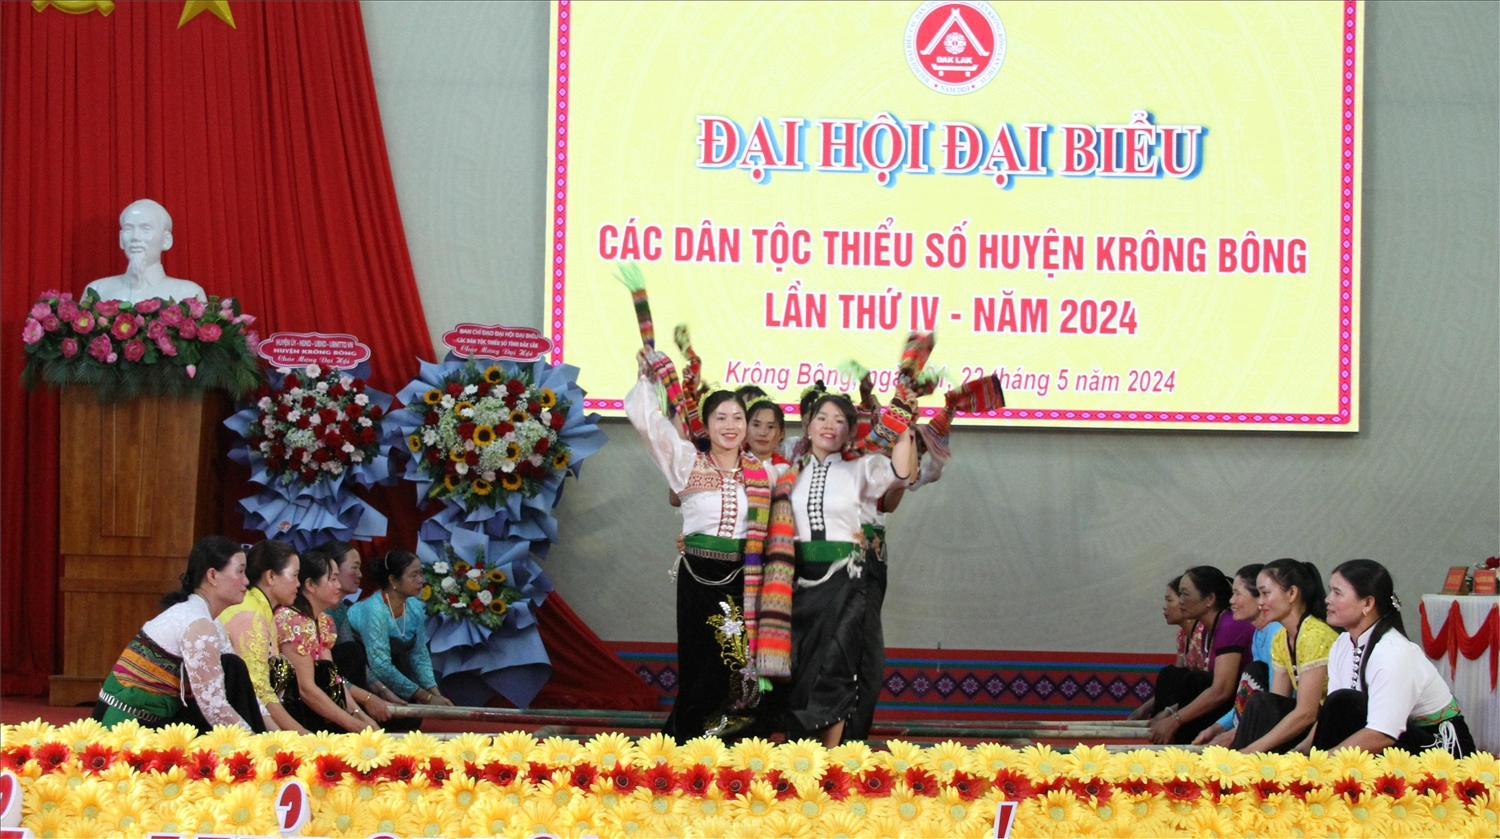 Em kg tin: Đại hội Đại biểu các dân tộc thiểu số huyện Krông Bông, tỉnh Đắk Lắk 10